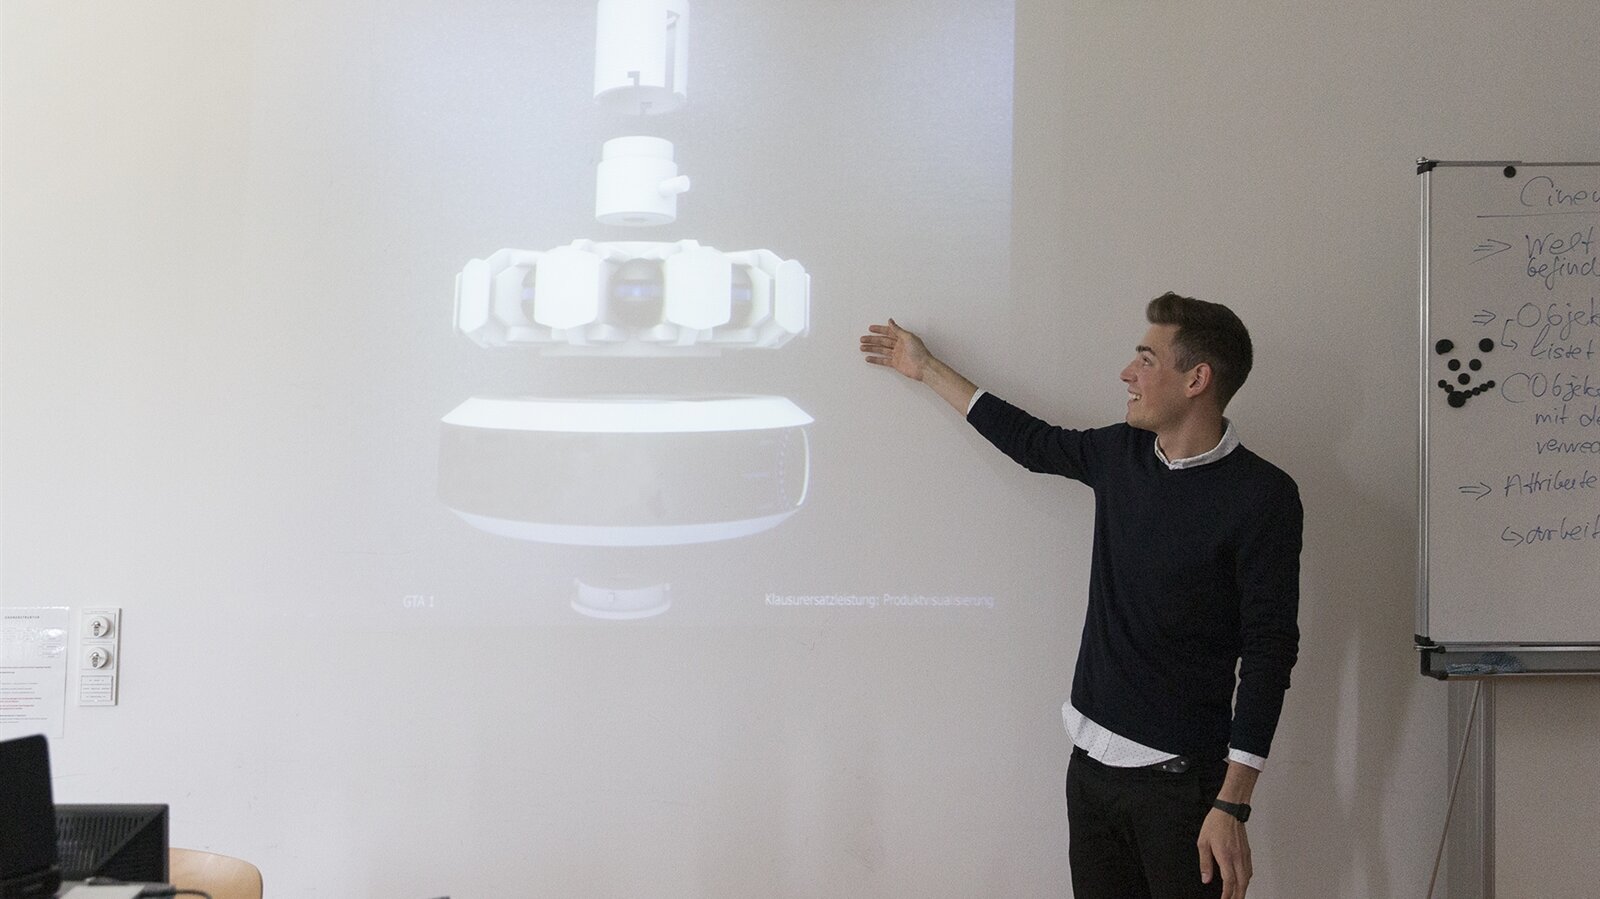 Nicholas präsentiert einen 3-D-Entwurf am Projektor vor der Klasse.